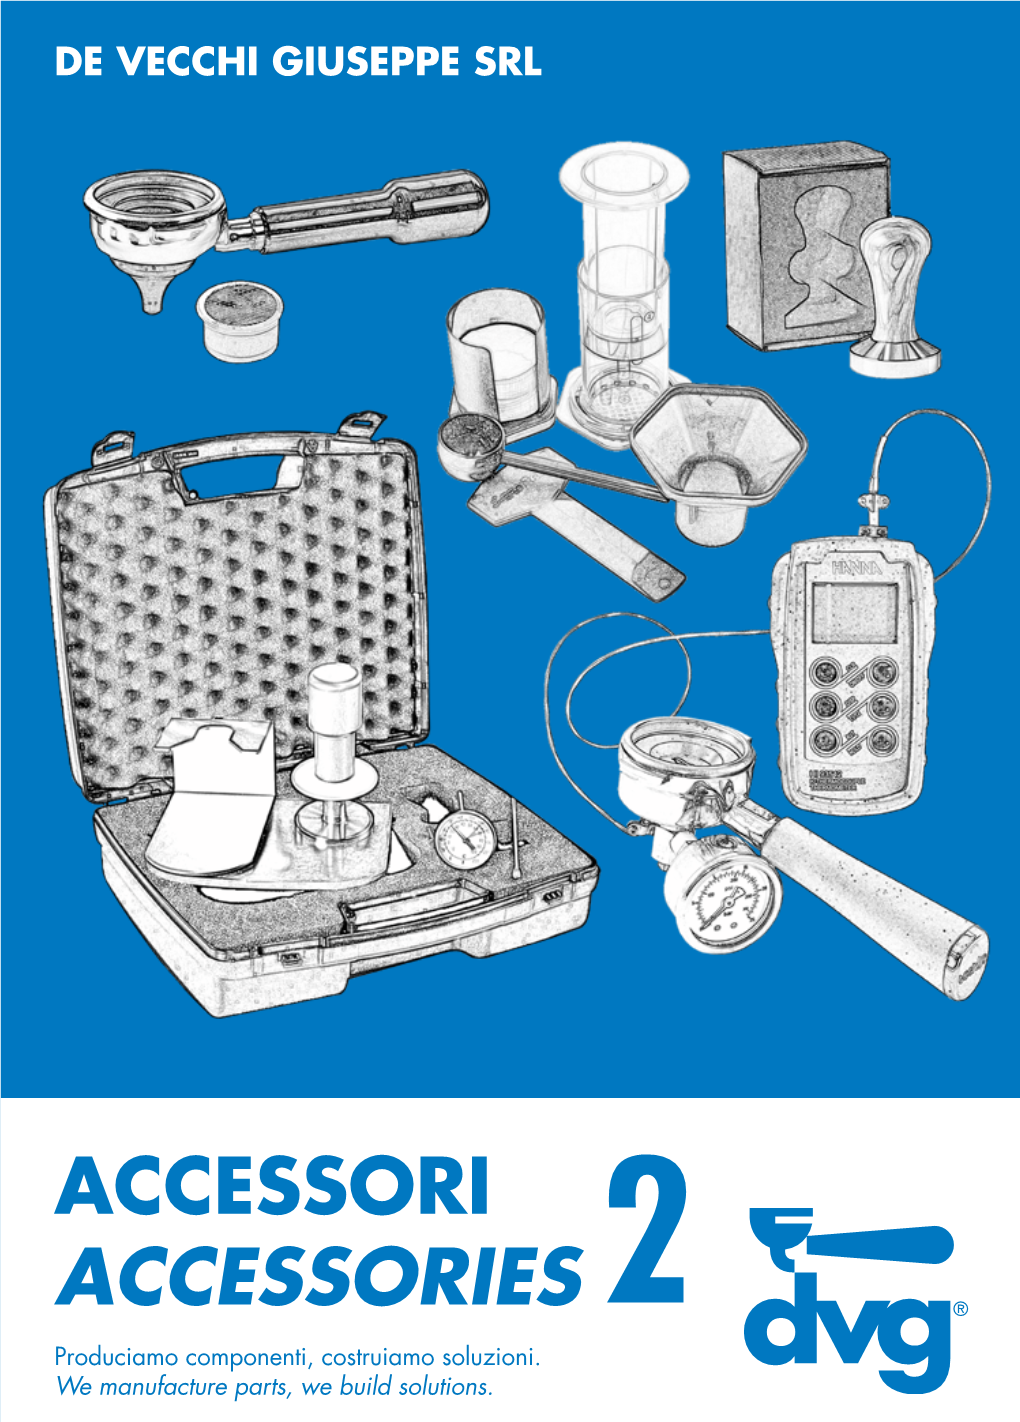 Accessori Accessories